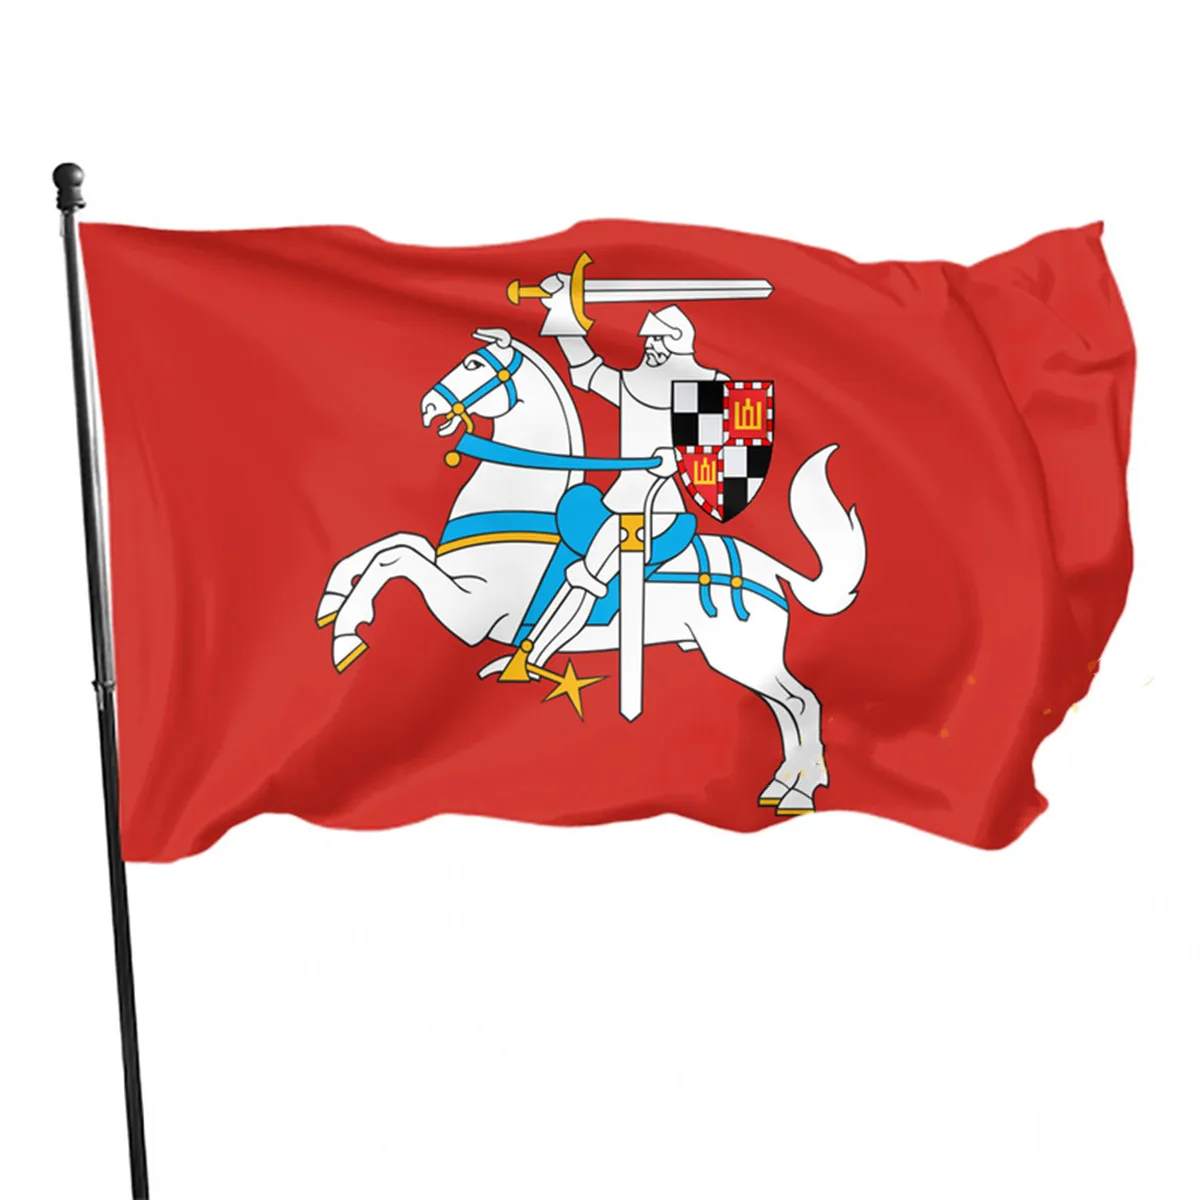 Исторический Флаг Литовского Всадника, Уникальный дизайн, Флаг Великого Княжества Литовского, Украшение дома, Литовский Баннер, Подарок для двора